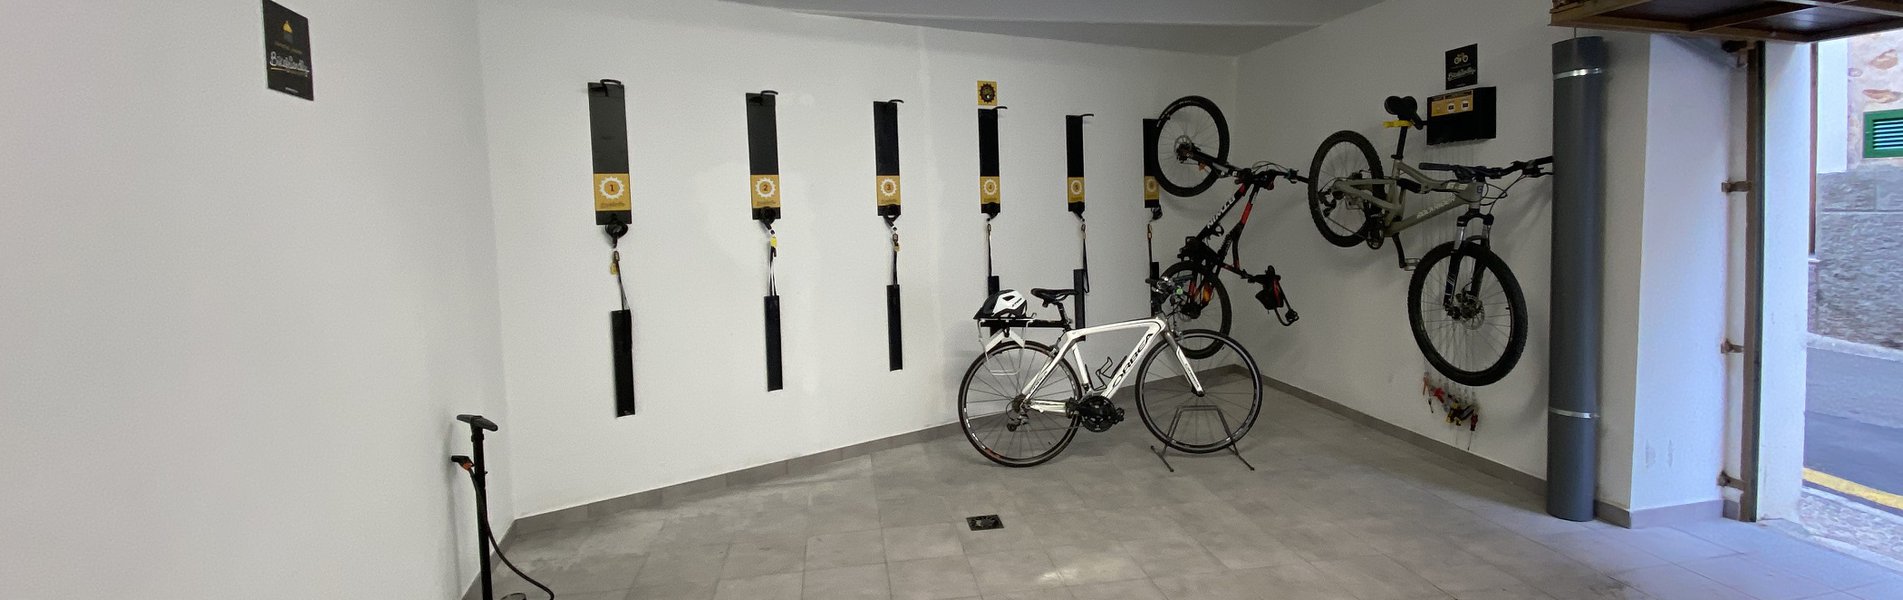 Garaje y Taller Bicicletas Alaro Natura